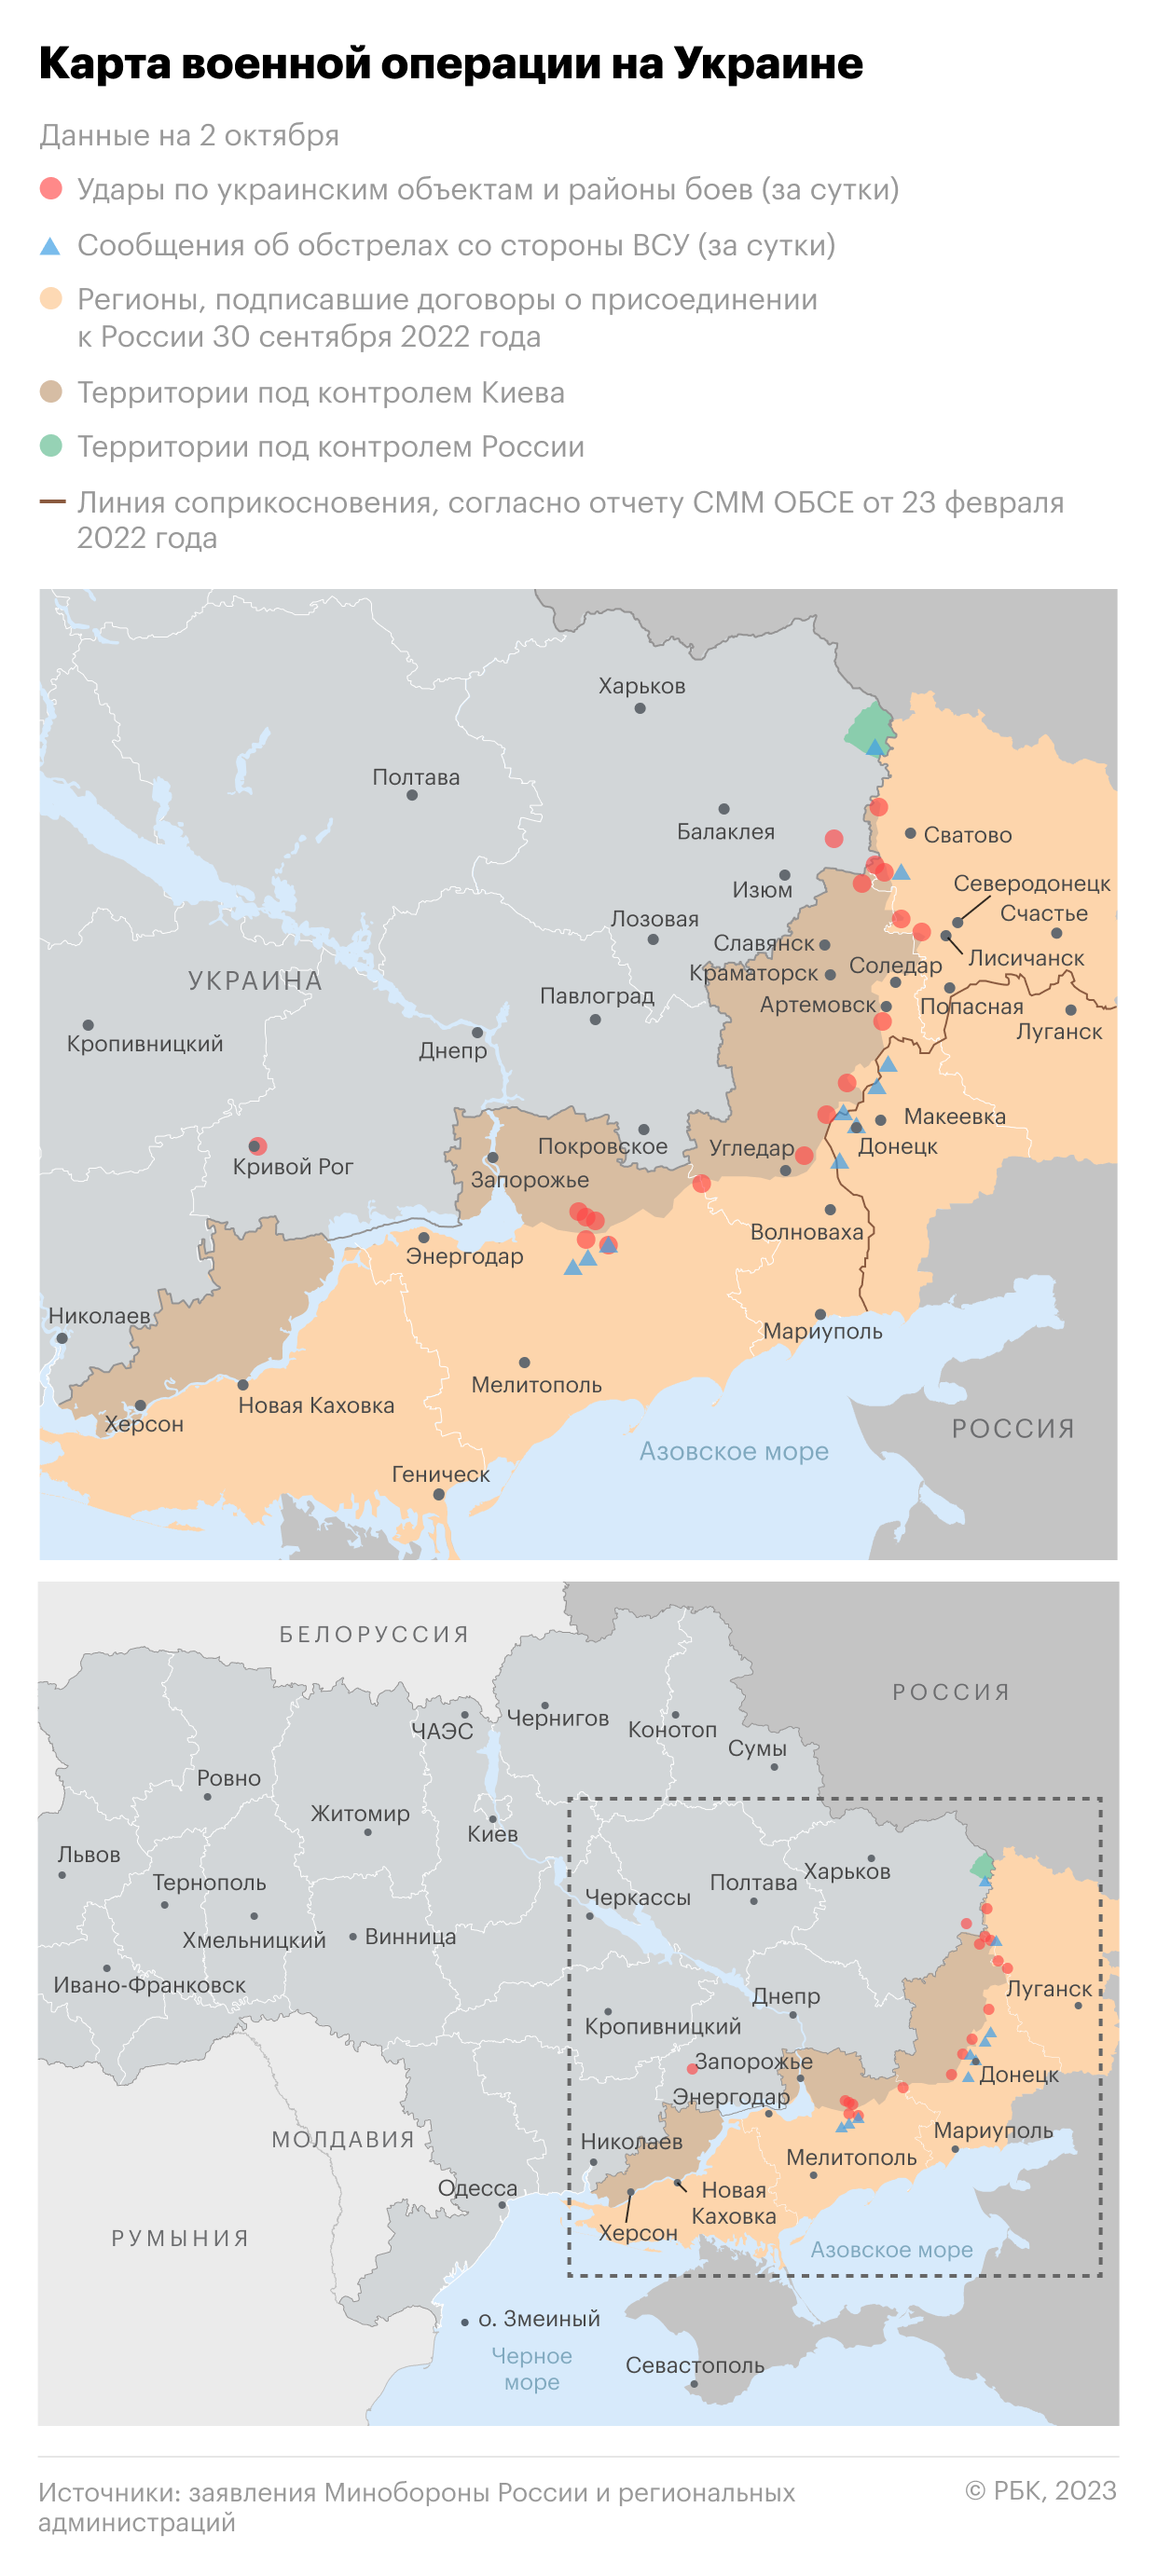 Военная операция на Украине. Карта на 2 октября